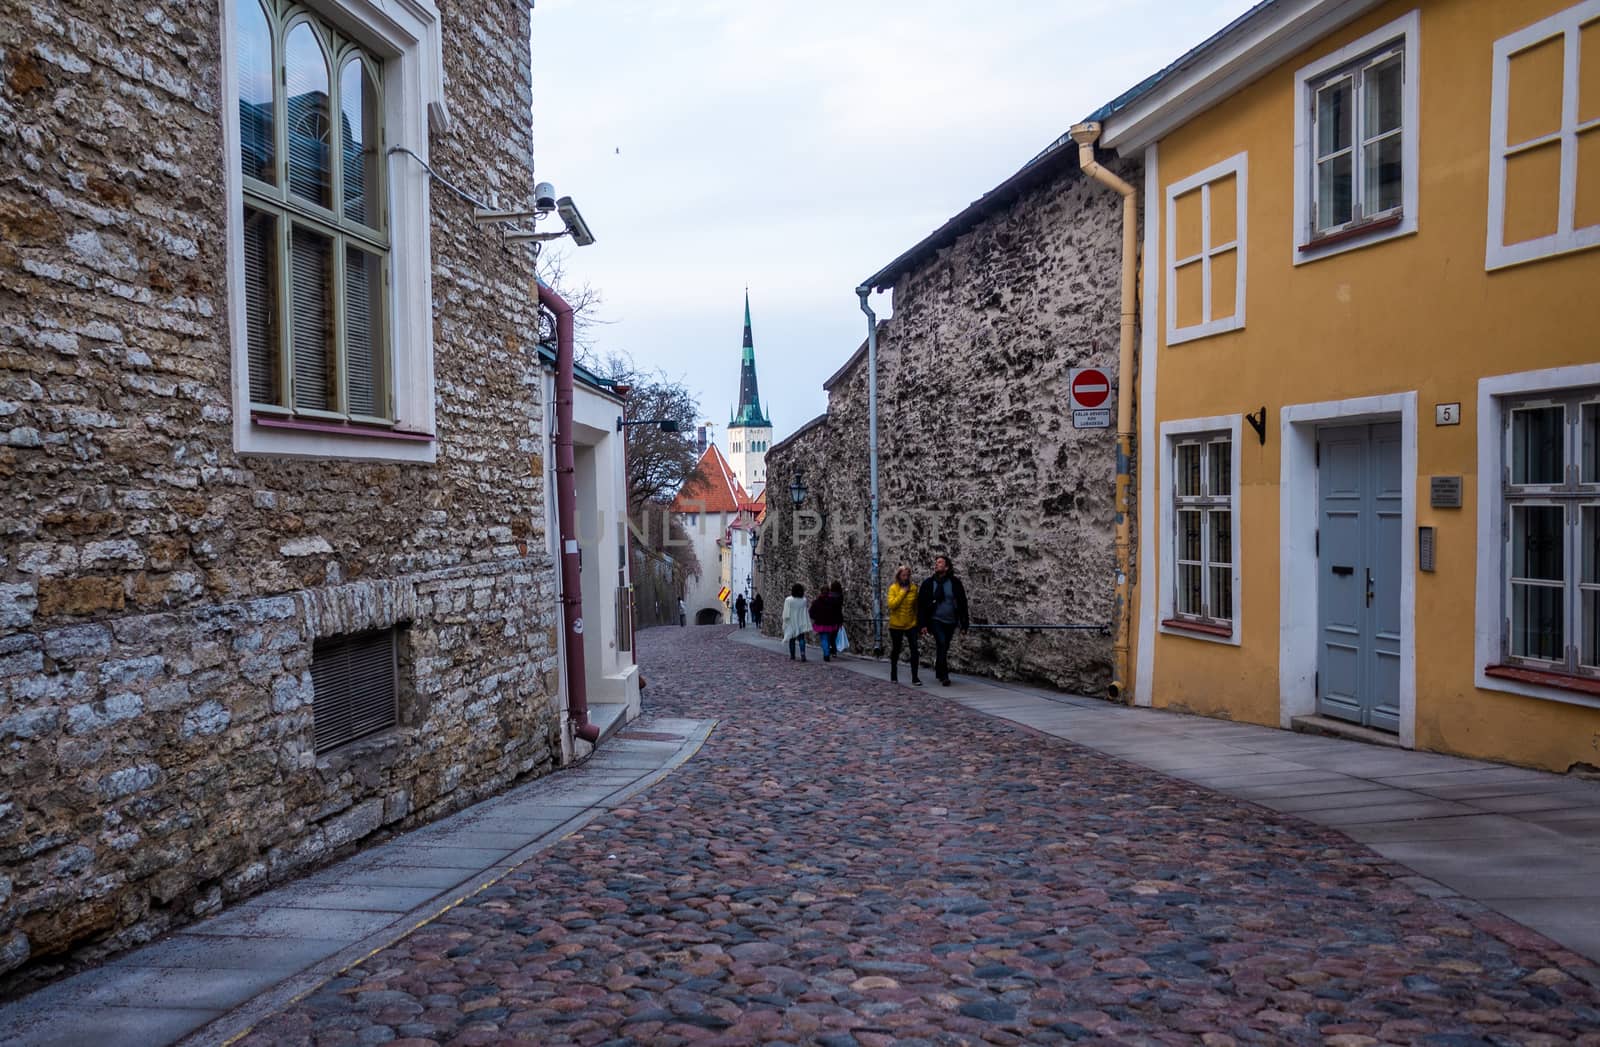 April 20, 2018, Tallinn, Estonia. Street of the old town in Tallinn.